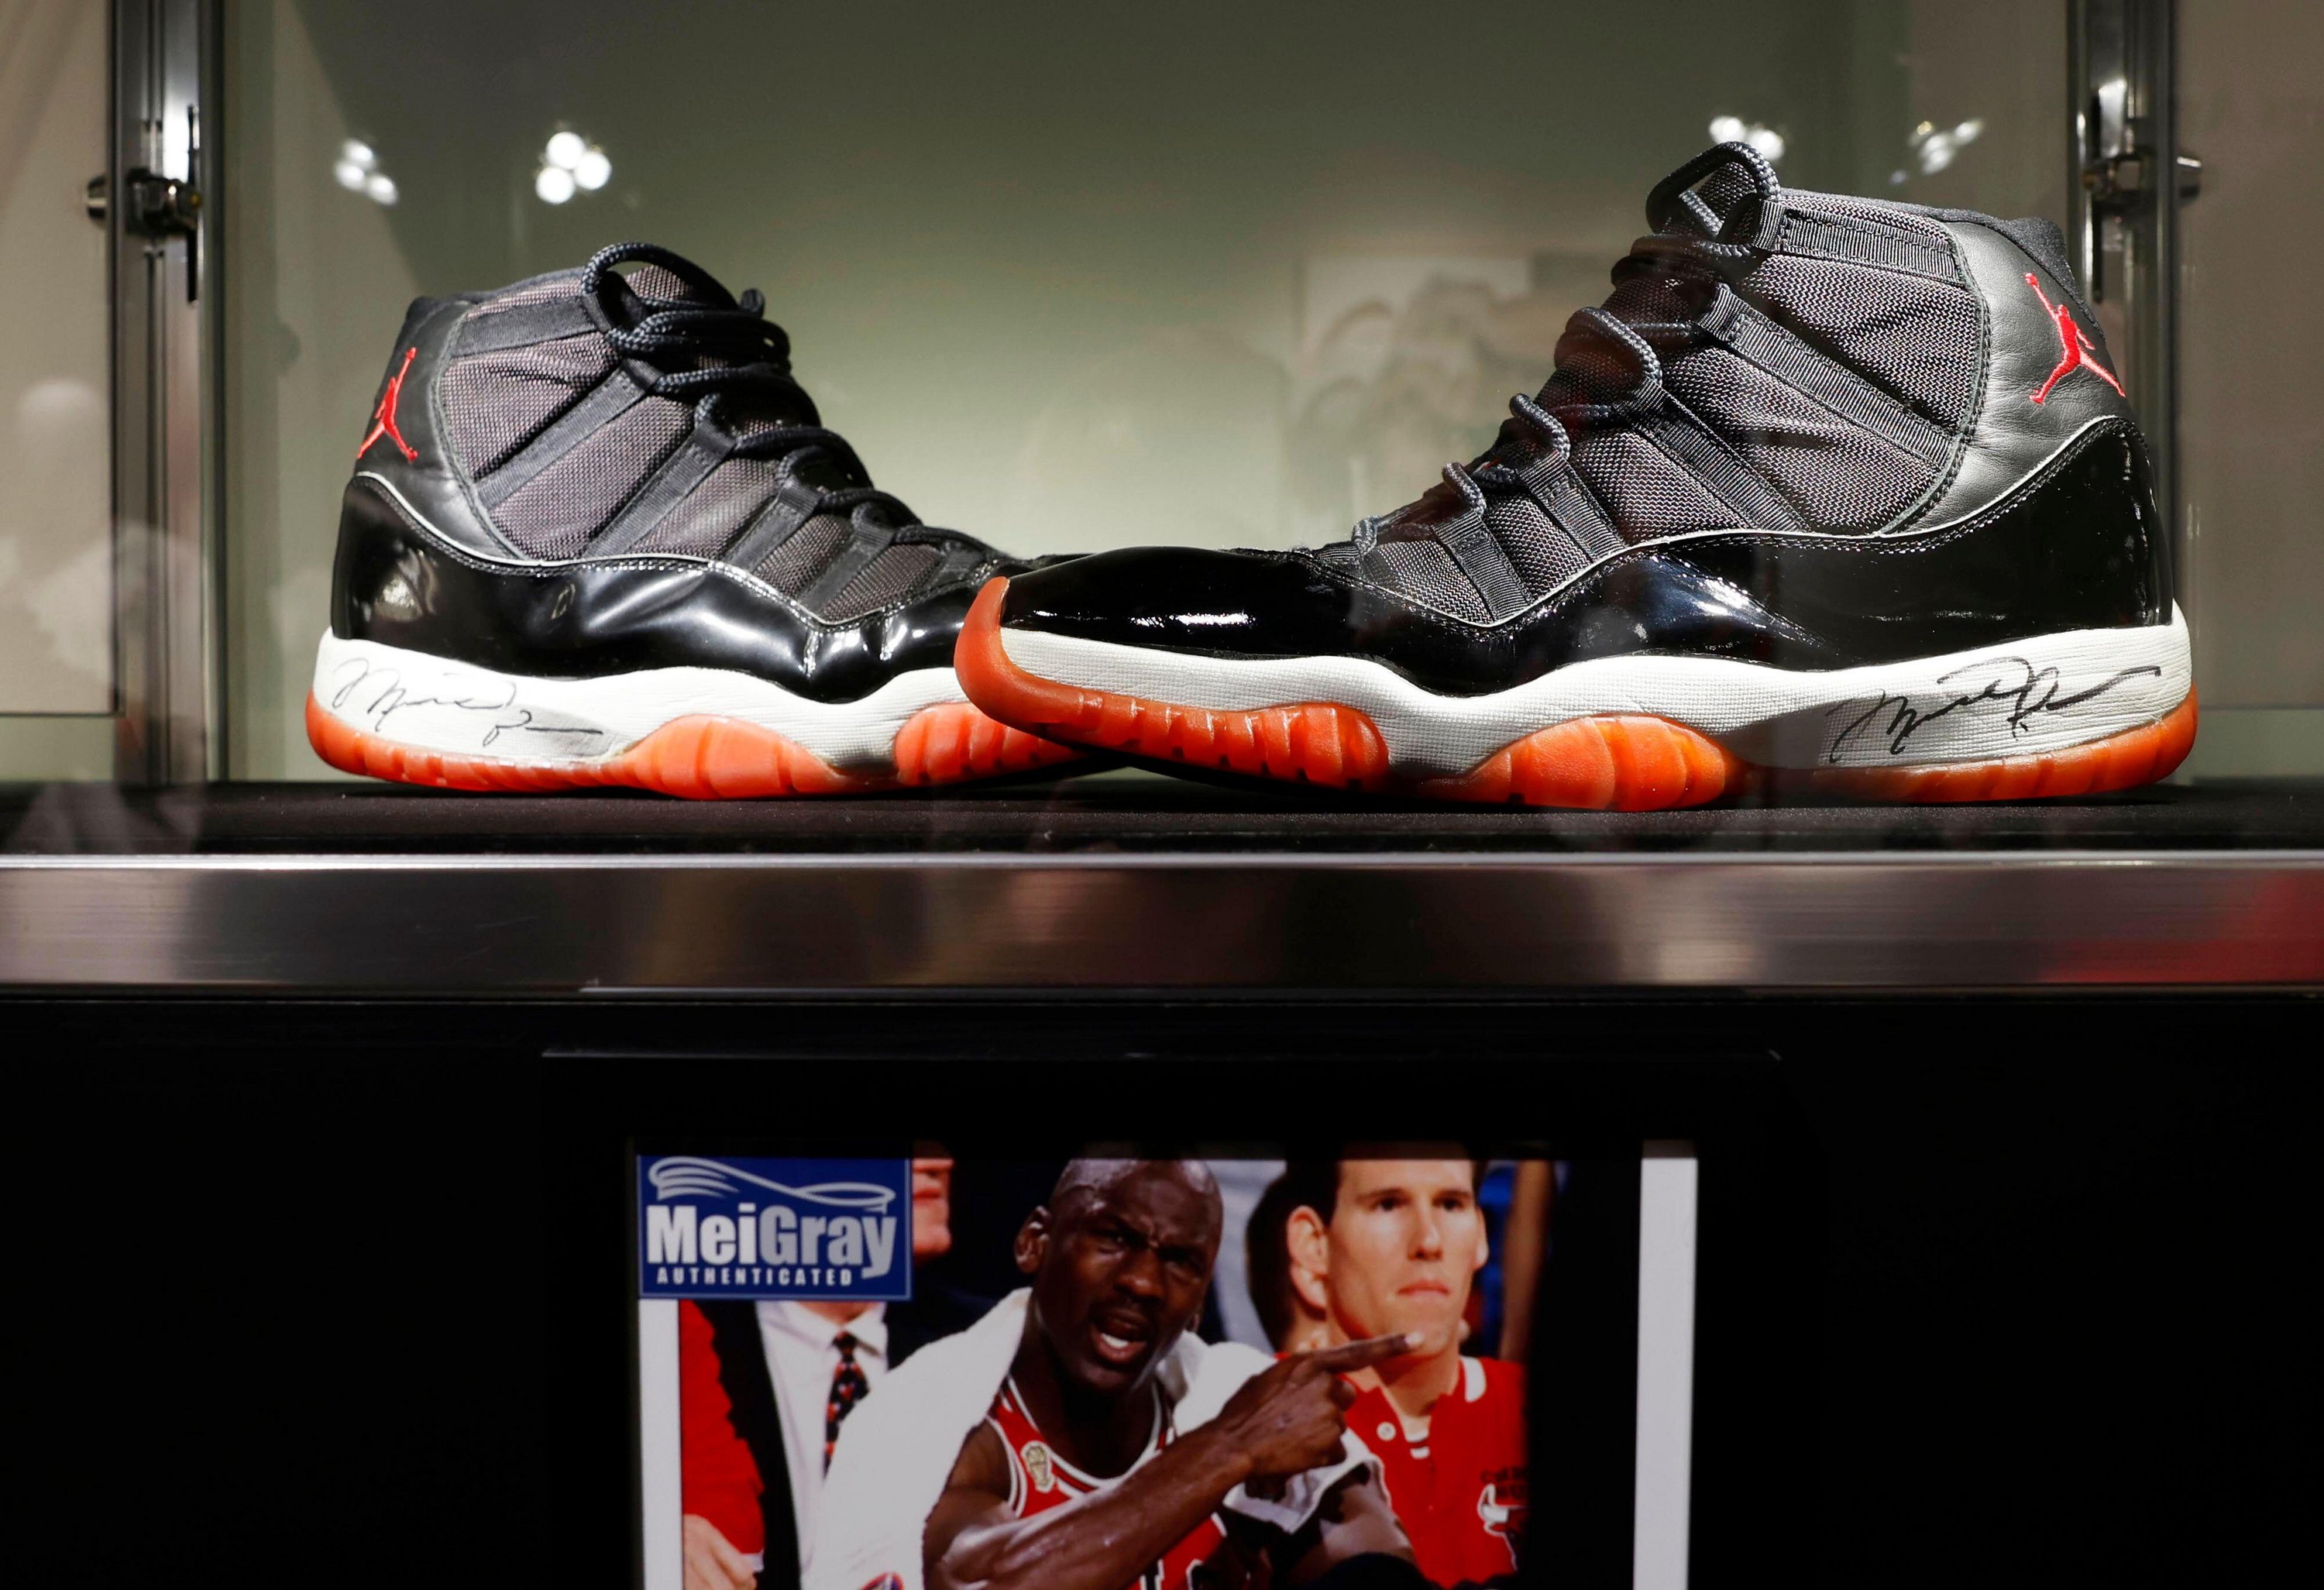 Es wird erwartet, dass seine Air Jordans bei einer Online-Auktion mehr als 300.000 Pfund einbringen